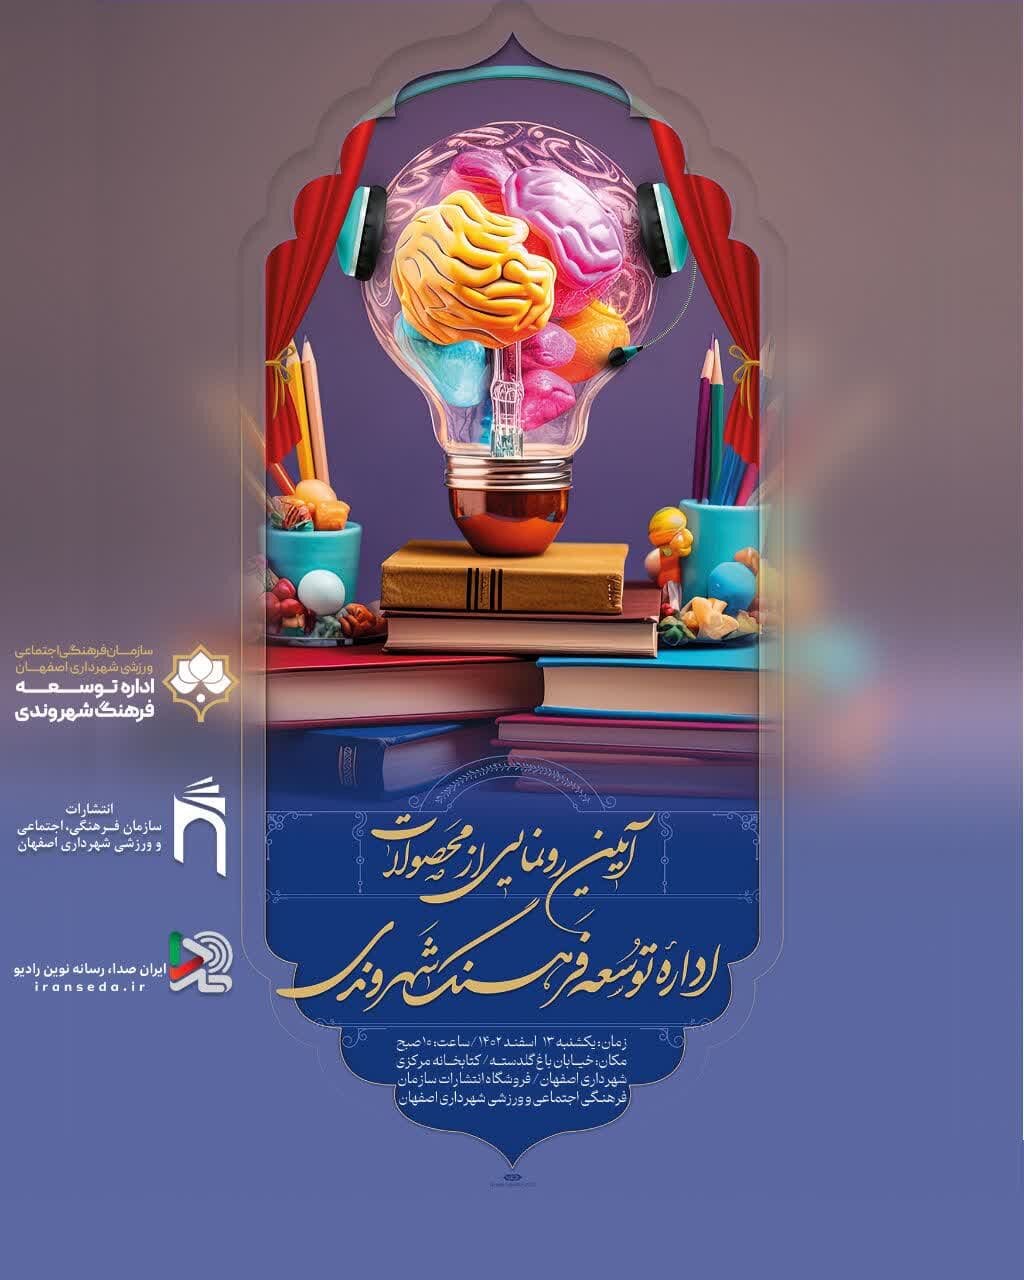 محصولات اداره توسعه فرهنگ شهروندی شهرداری اصفهان رونمایی شد